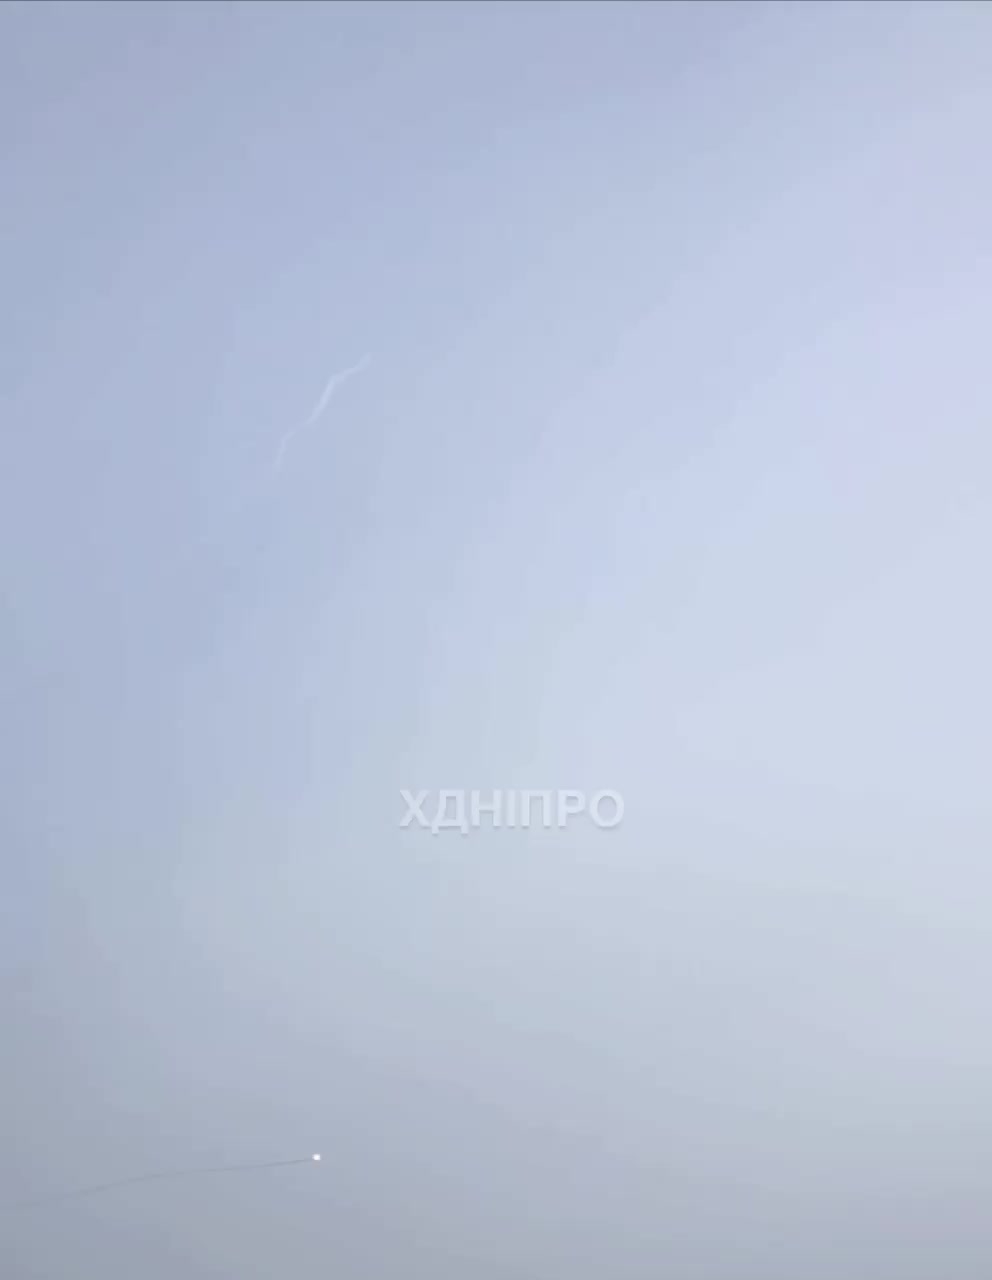 ППО збила ракету над містом Дніпро